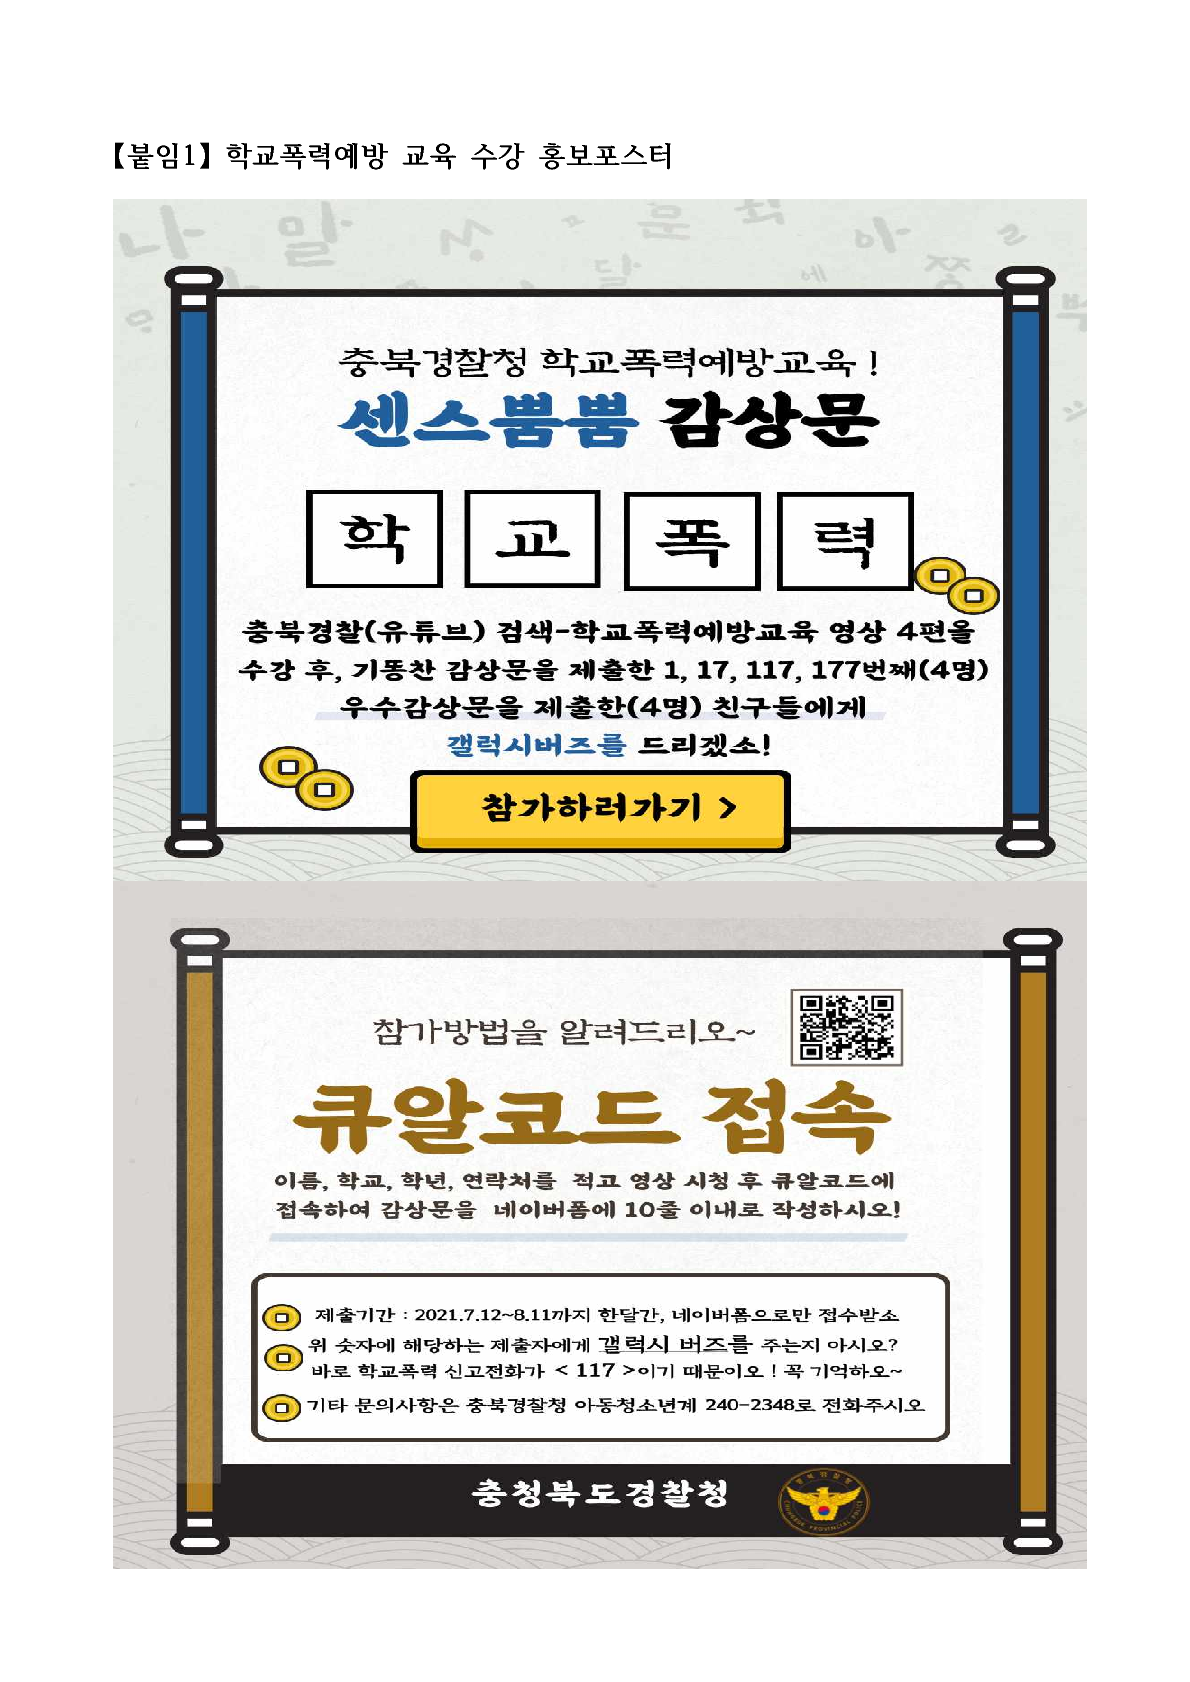 충북경찰청 학교폭력예방교육 수강 홍보물_1